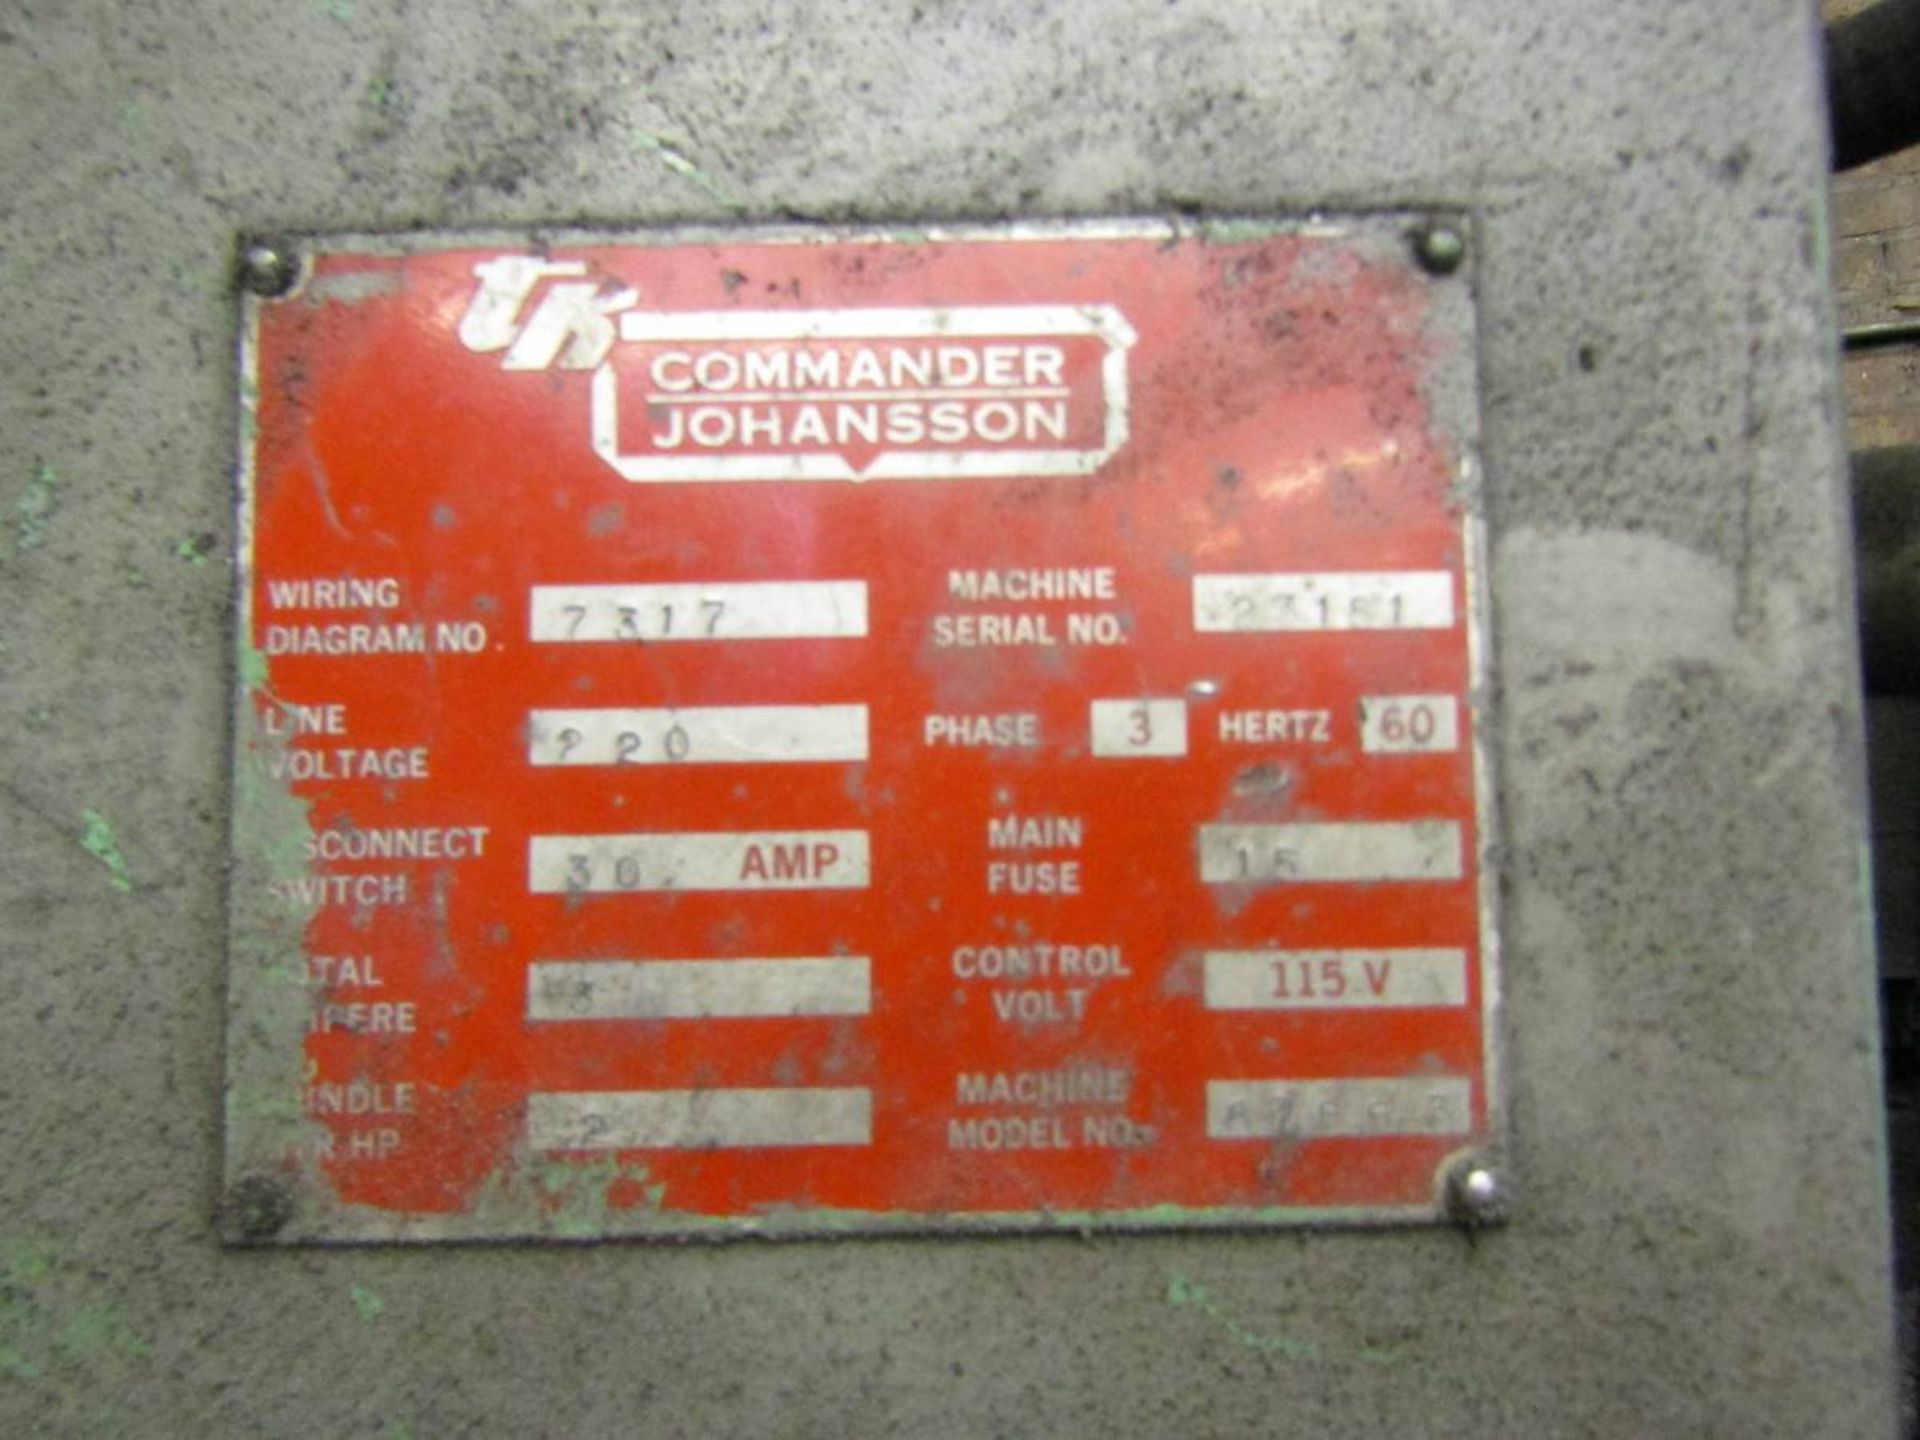 TK Commander Johansson 1784271 2 HP Radial Head Drill - Image 5 of 5